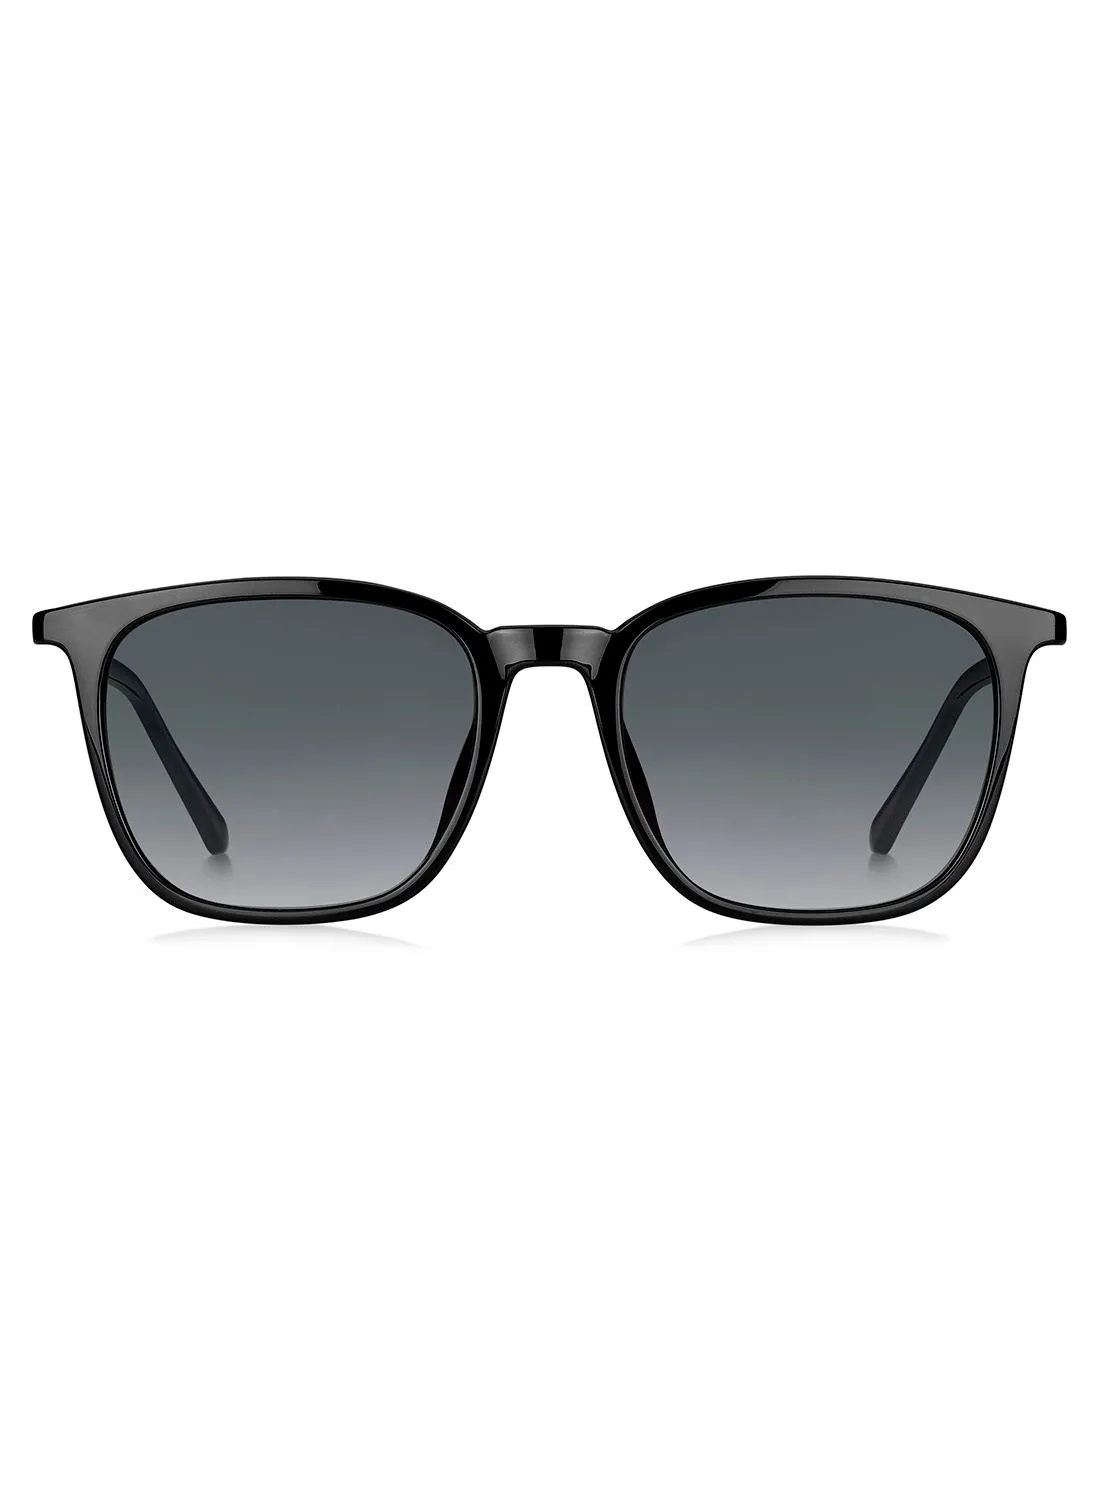 FOSSIL Men's Square Sunglasses FOS 3091/S 807